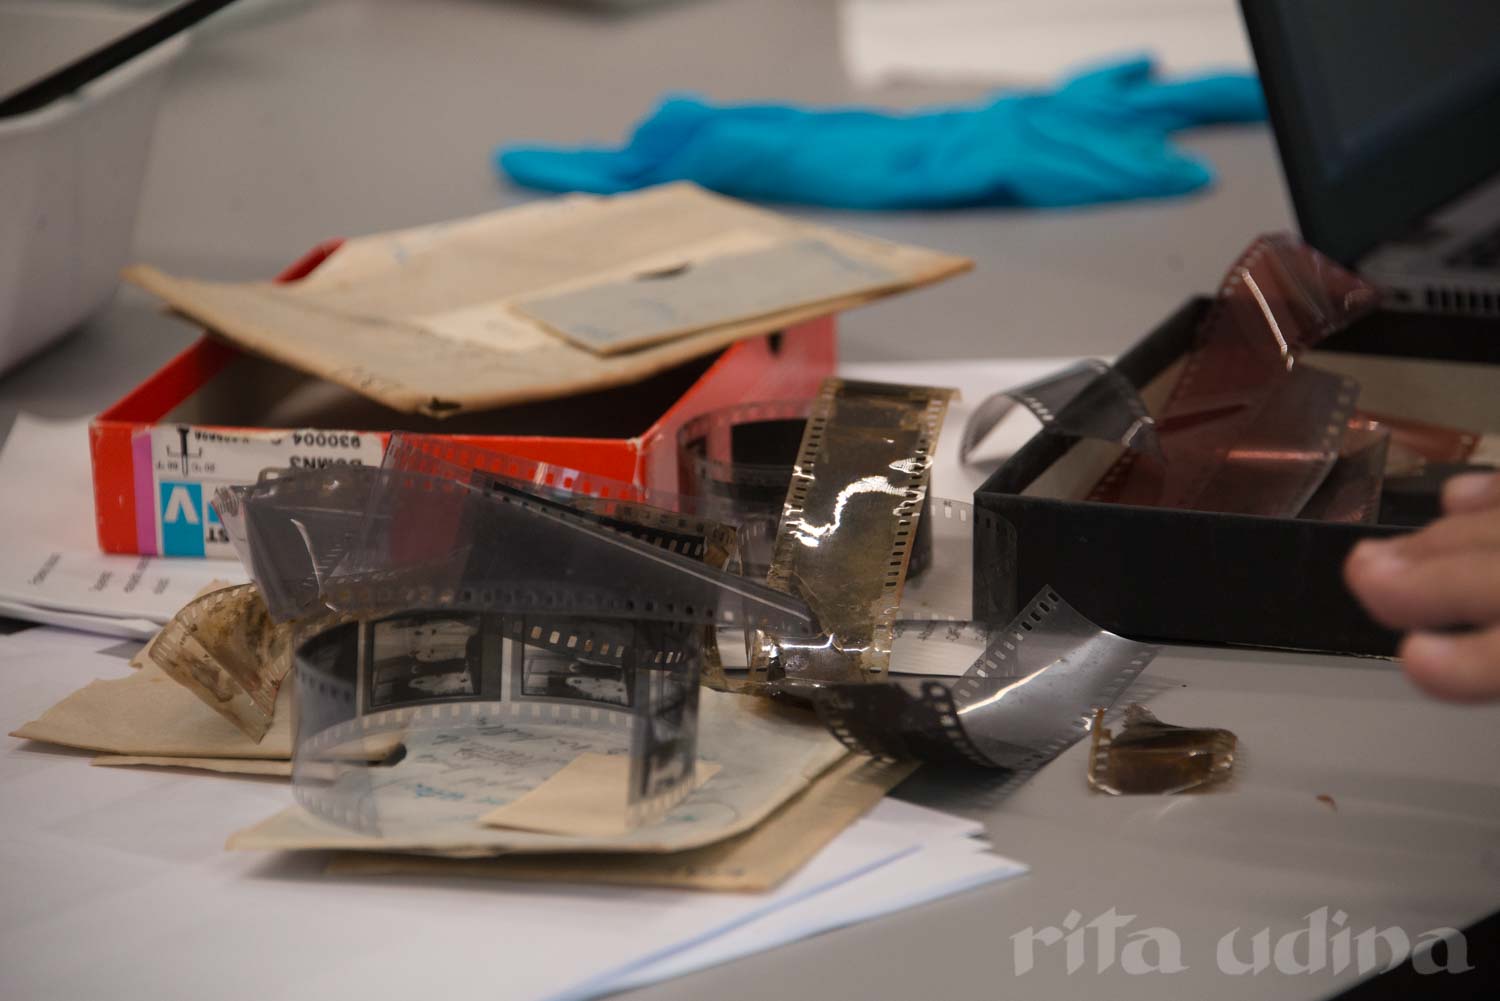 Identificación de películas fílmicas: acetatos, nitratos, poliésteres. Curso "Identificación, conservación y restauración de fotografías" en el Museo Nacional de Noruega.